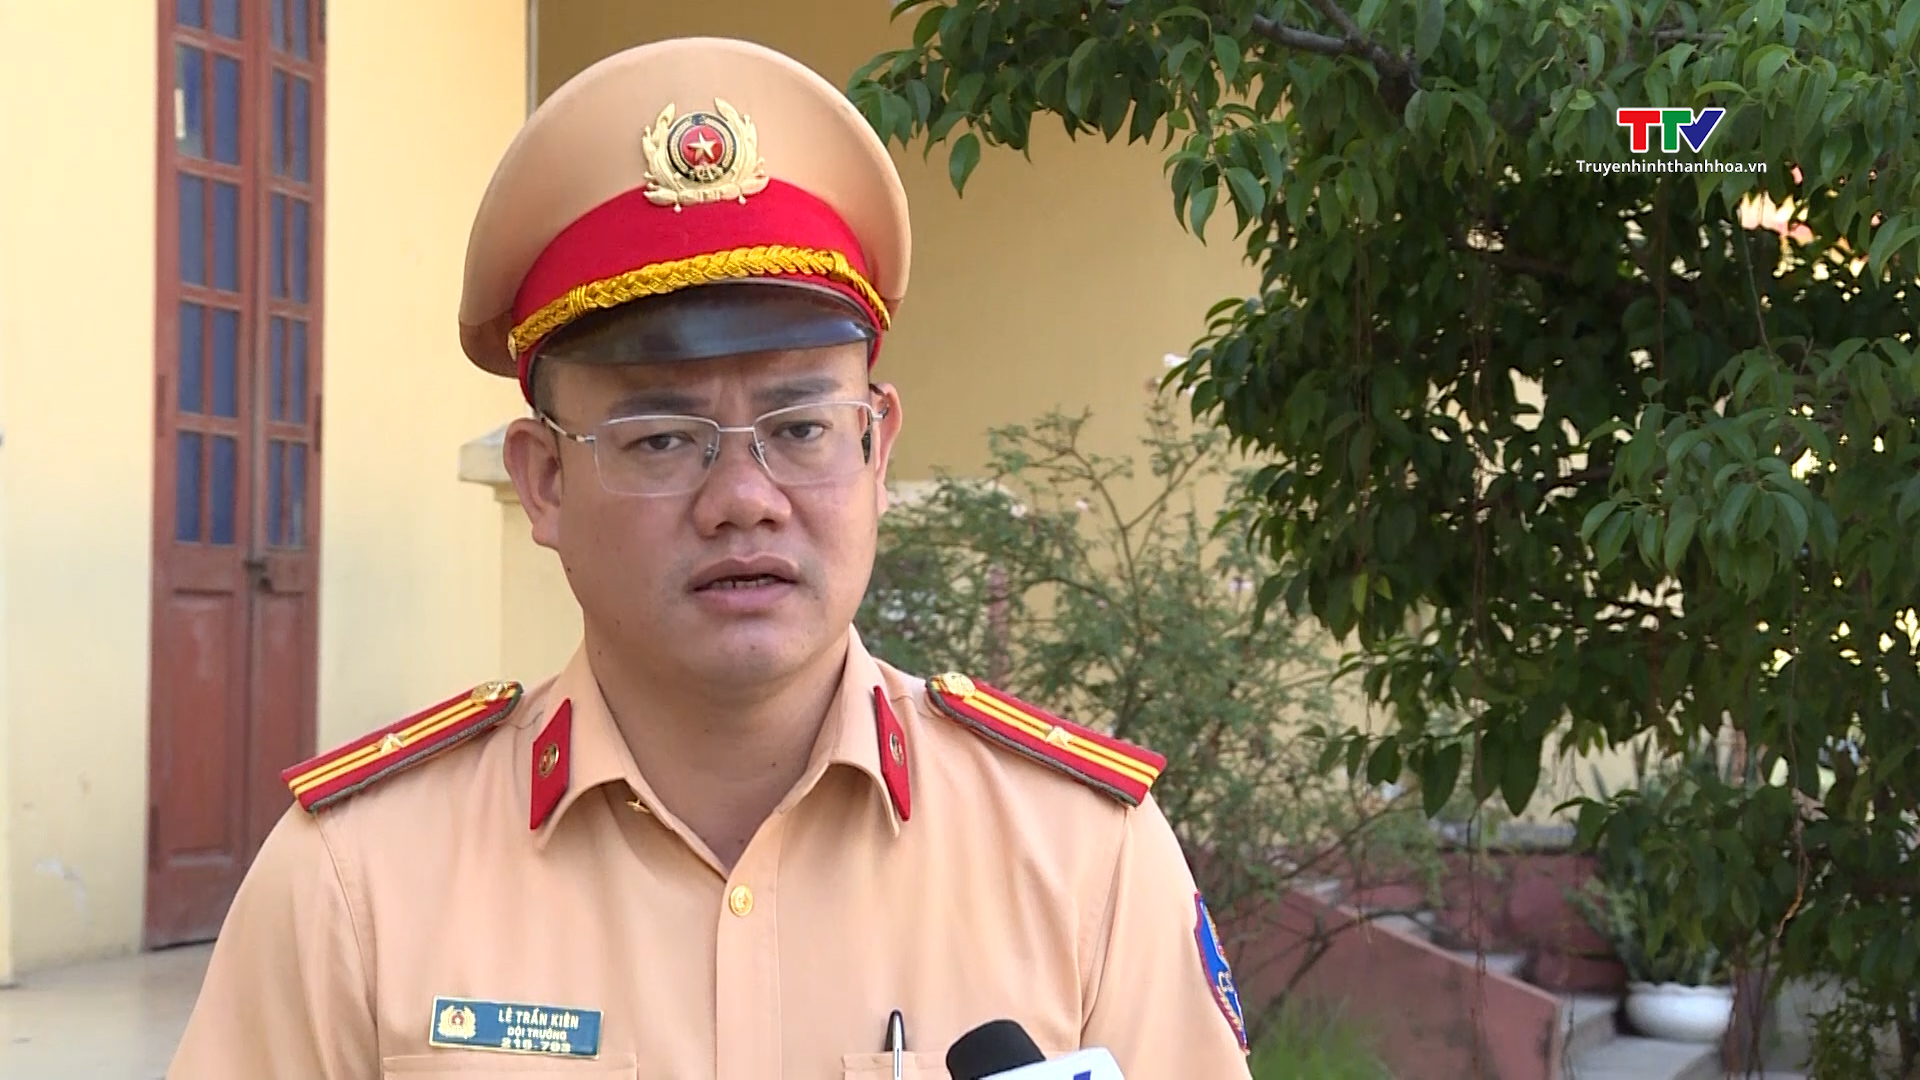 Cảnh sát giao thông Thanh Hoá: lập biên bản 282 xe khách và xe container vi phạm giao thông sau 10 ngày ra quân - Ảnh 4.